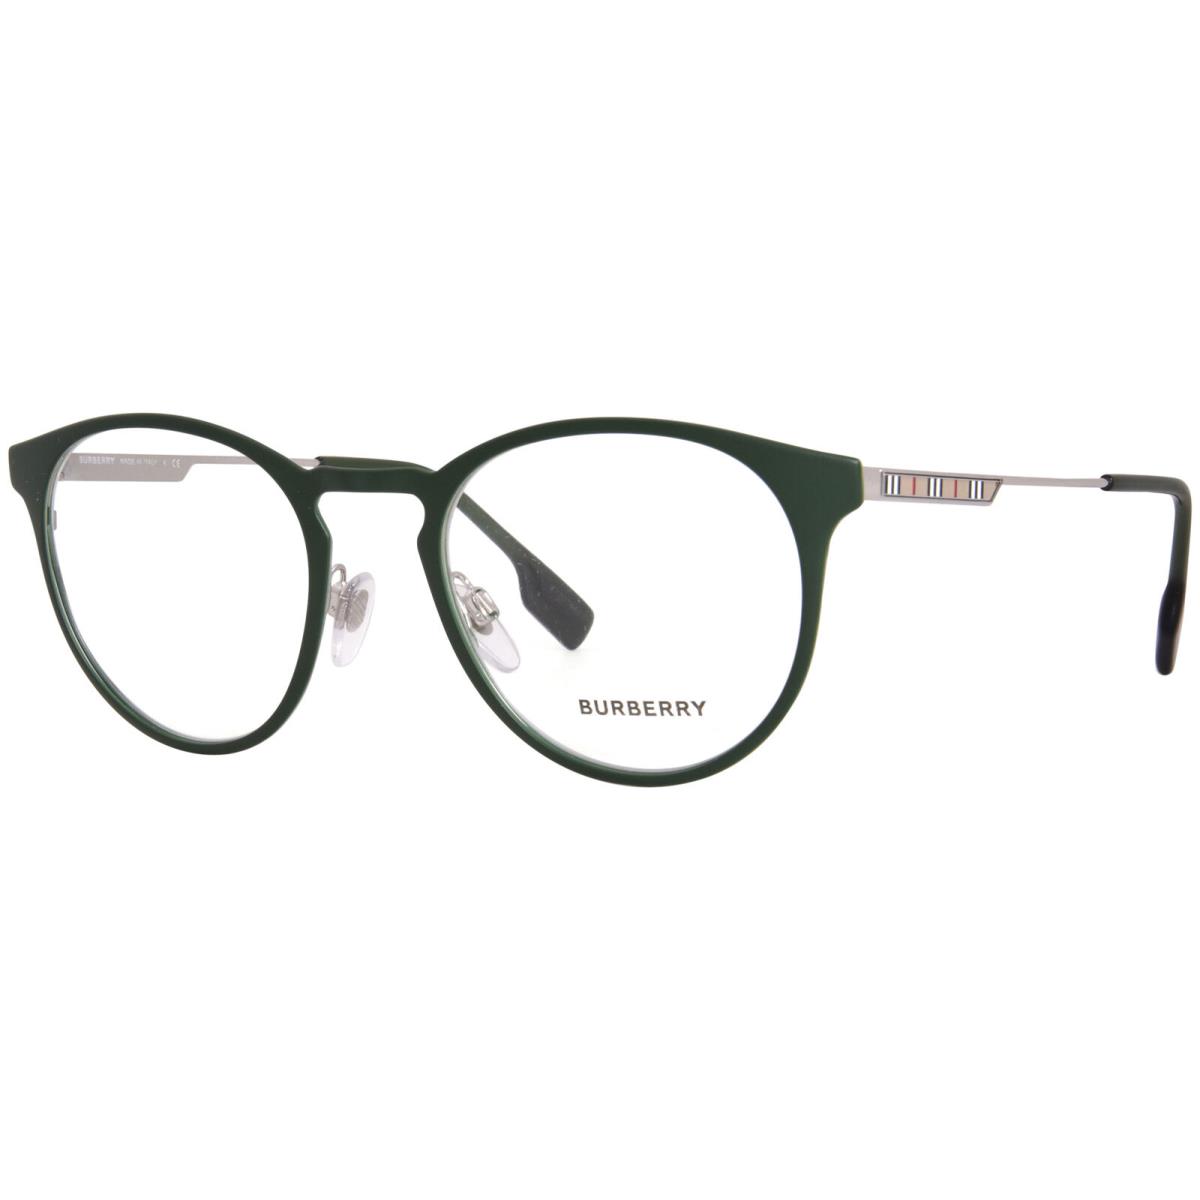 Burberry York BE1360 1327 Eyeglasses Frame Men`s Green Full Rim Round Shape 51mm